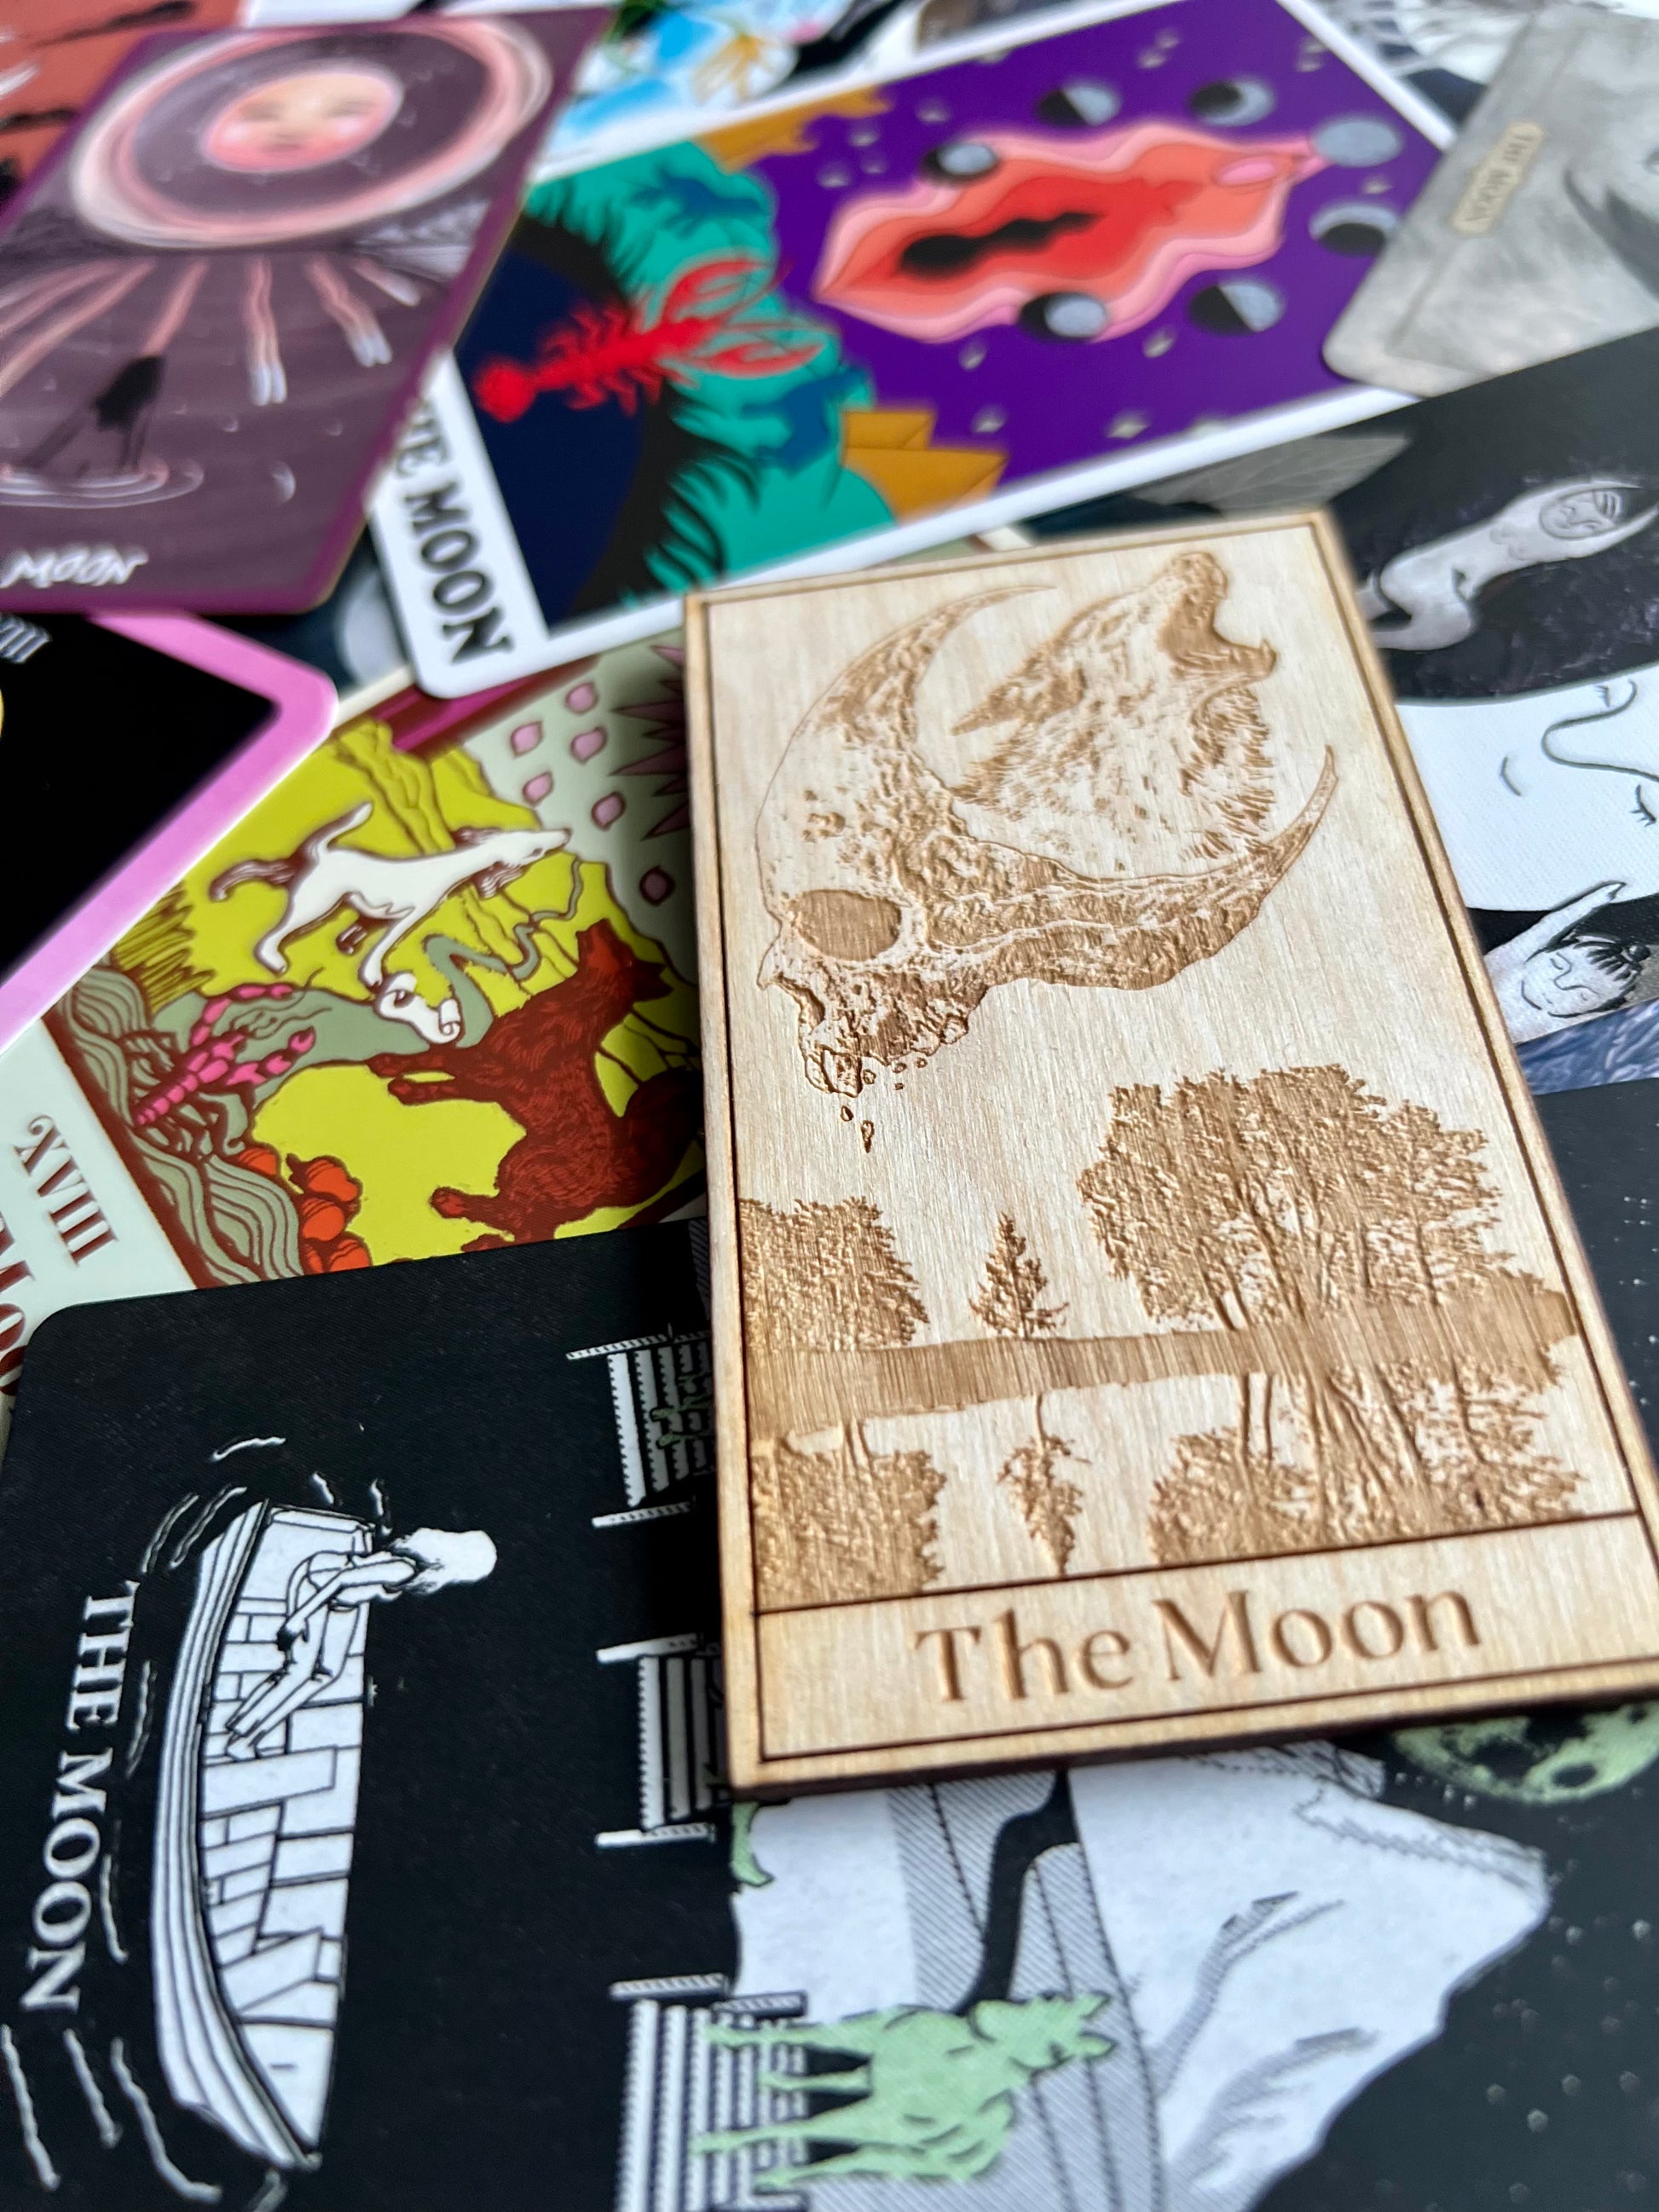 Tarot Deck Card Magnets Wooden Tarot Card Magnets The Moon Tarot Card The Sun Tarot Card High Priestess Tarot Card Death Tarot Card Decks